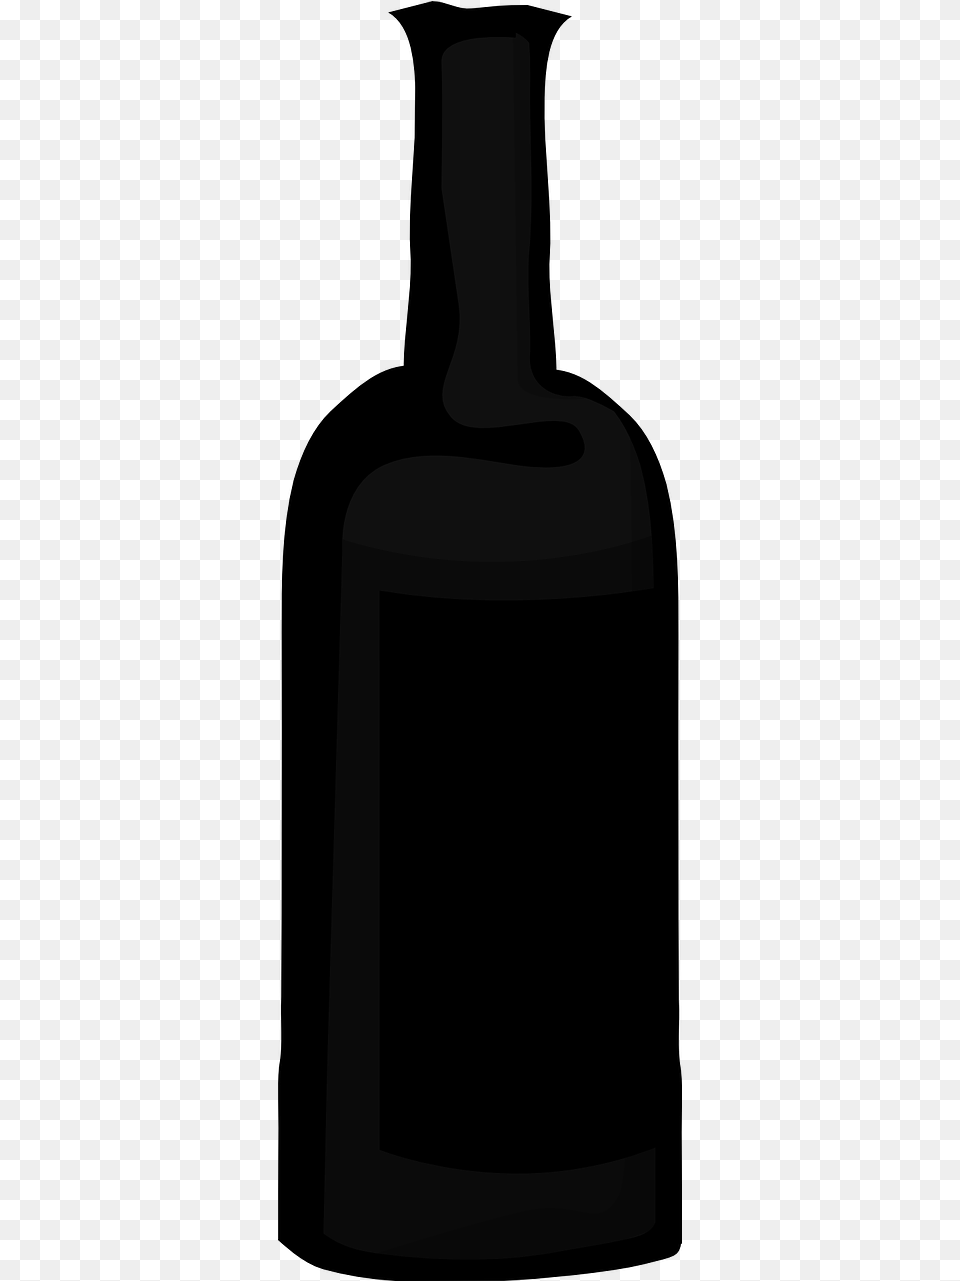 Vector Silueta Botella De Alcohol, Gray Free Transparent Png